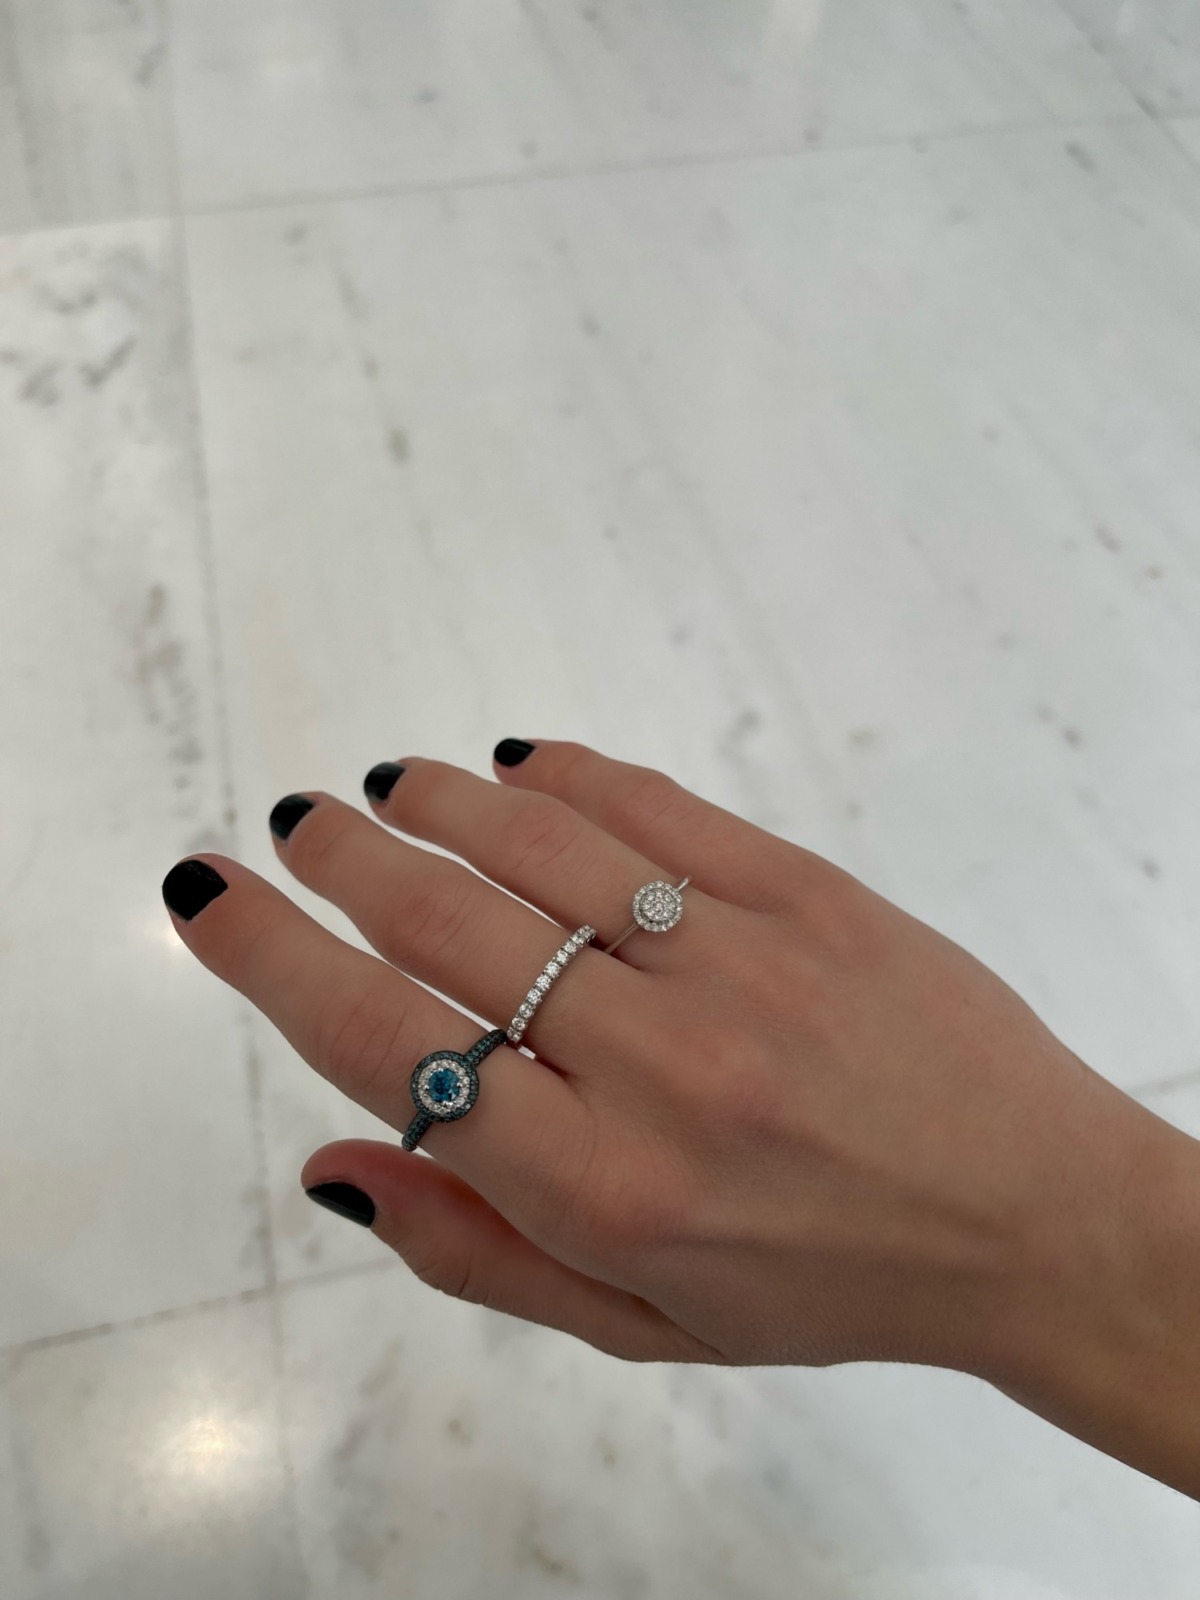 δαχτυλιδι με διαμαντι, λευκοχρυσο δαχτυλιδι με μπλε πετρες